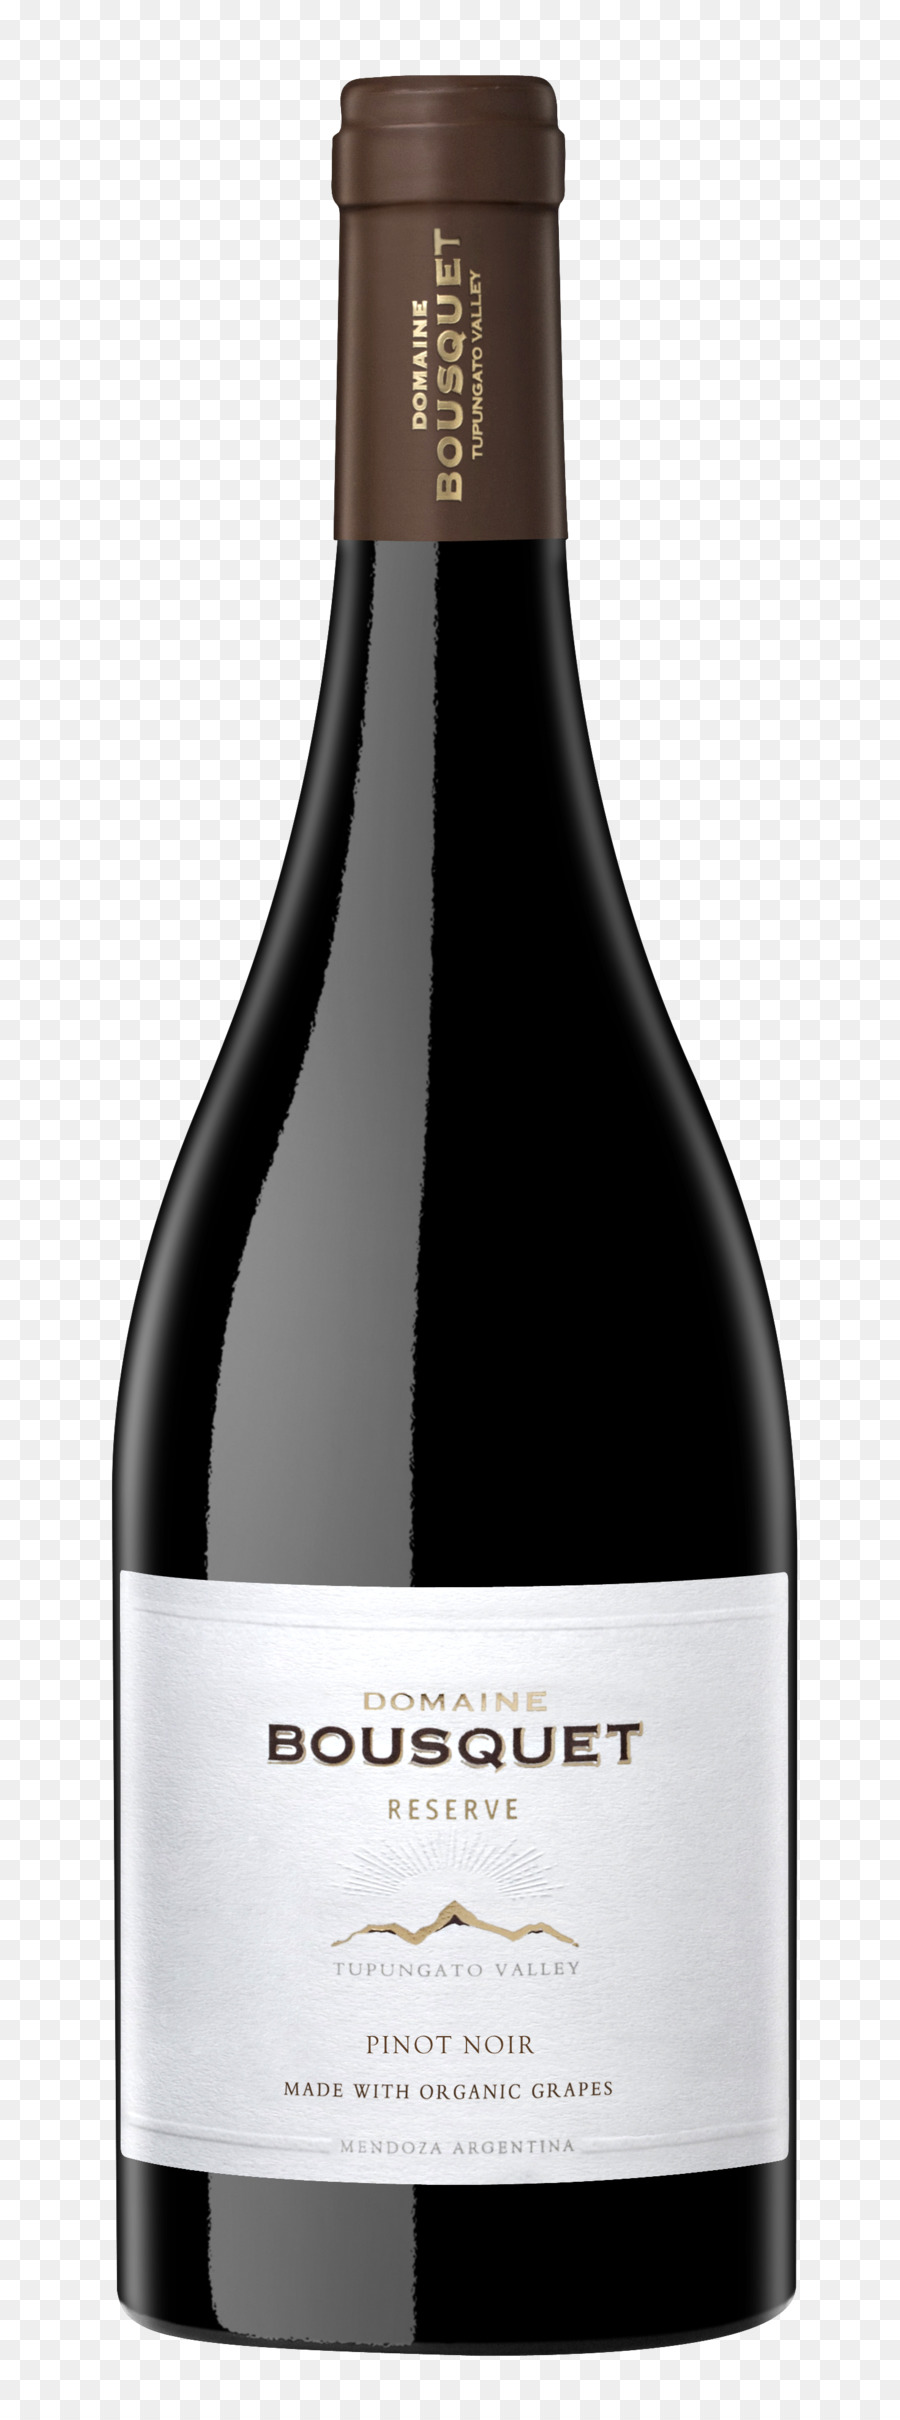 Vino rosso Pinot noir, Cabernet Sauvignon Shiraz - pinot uve da vino